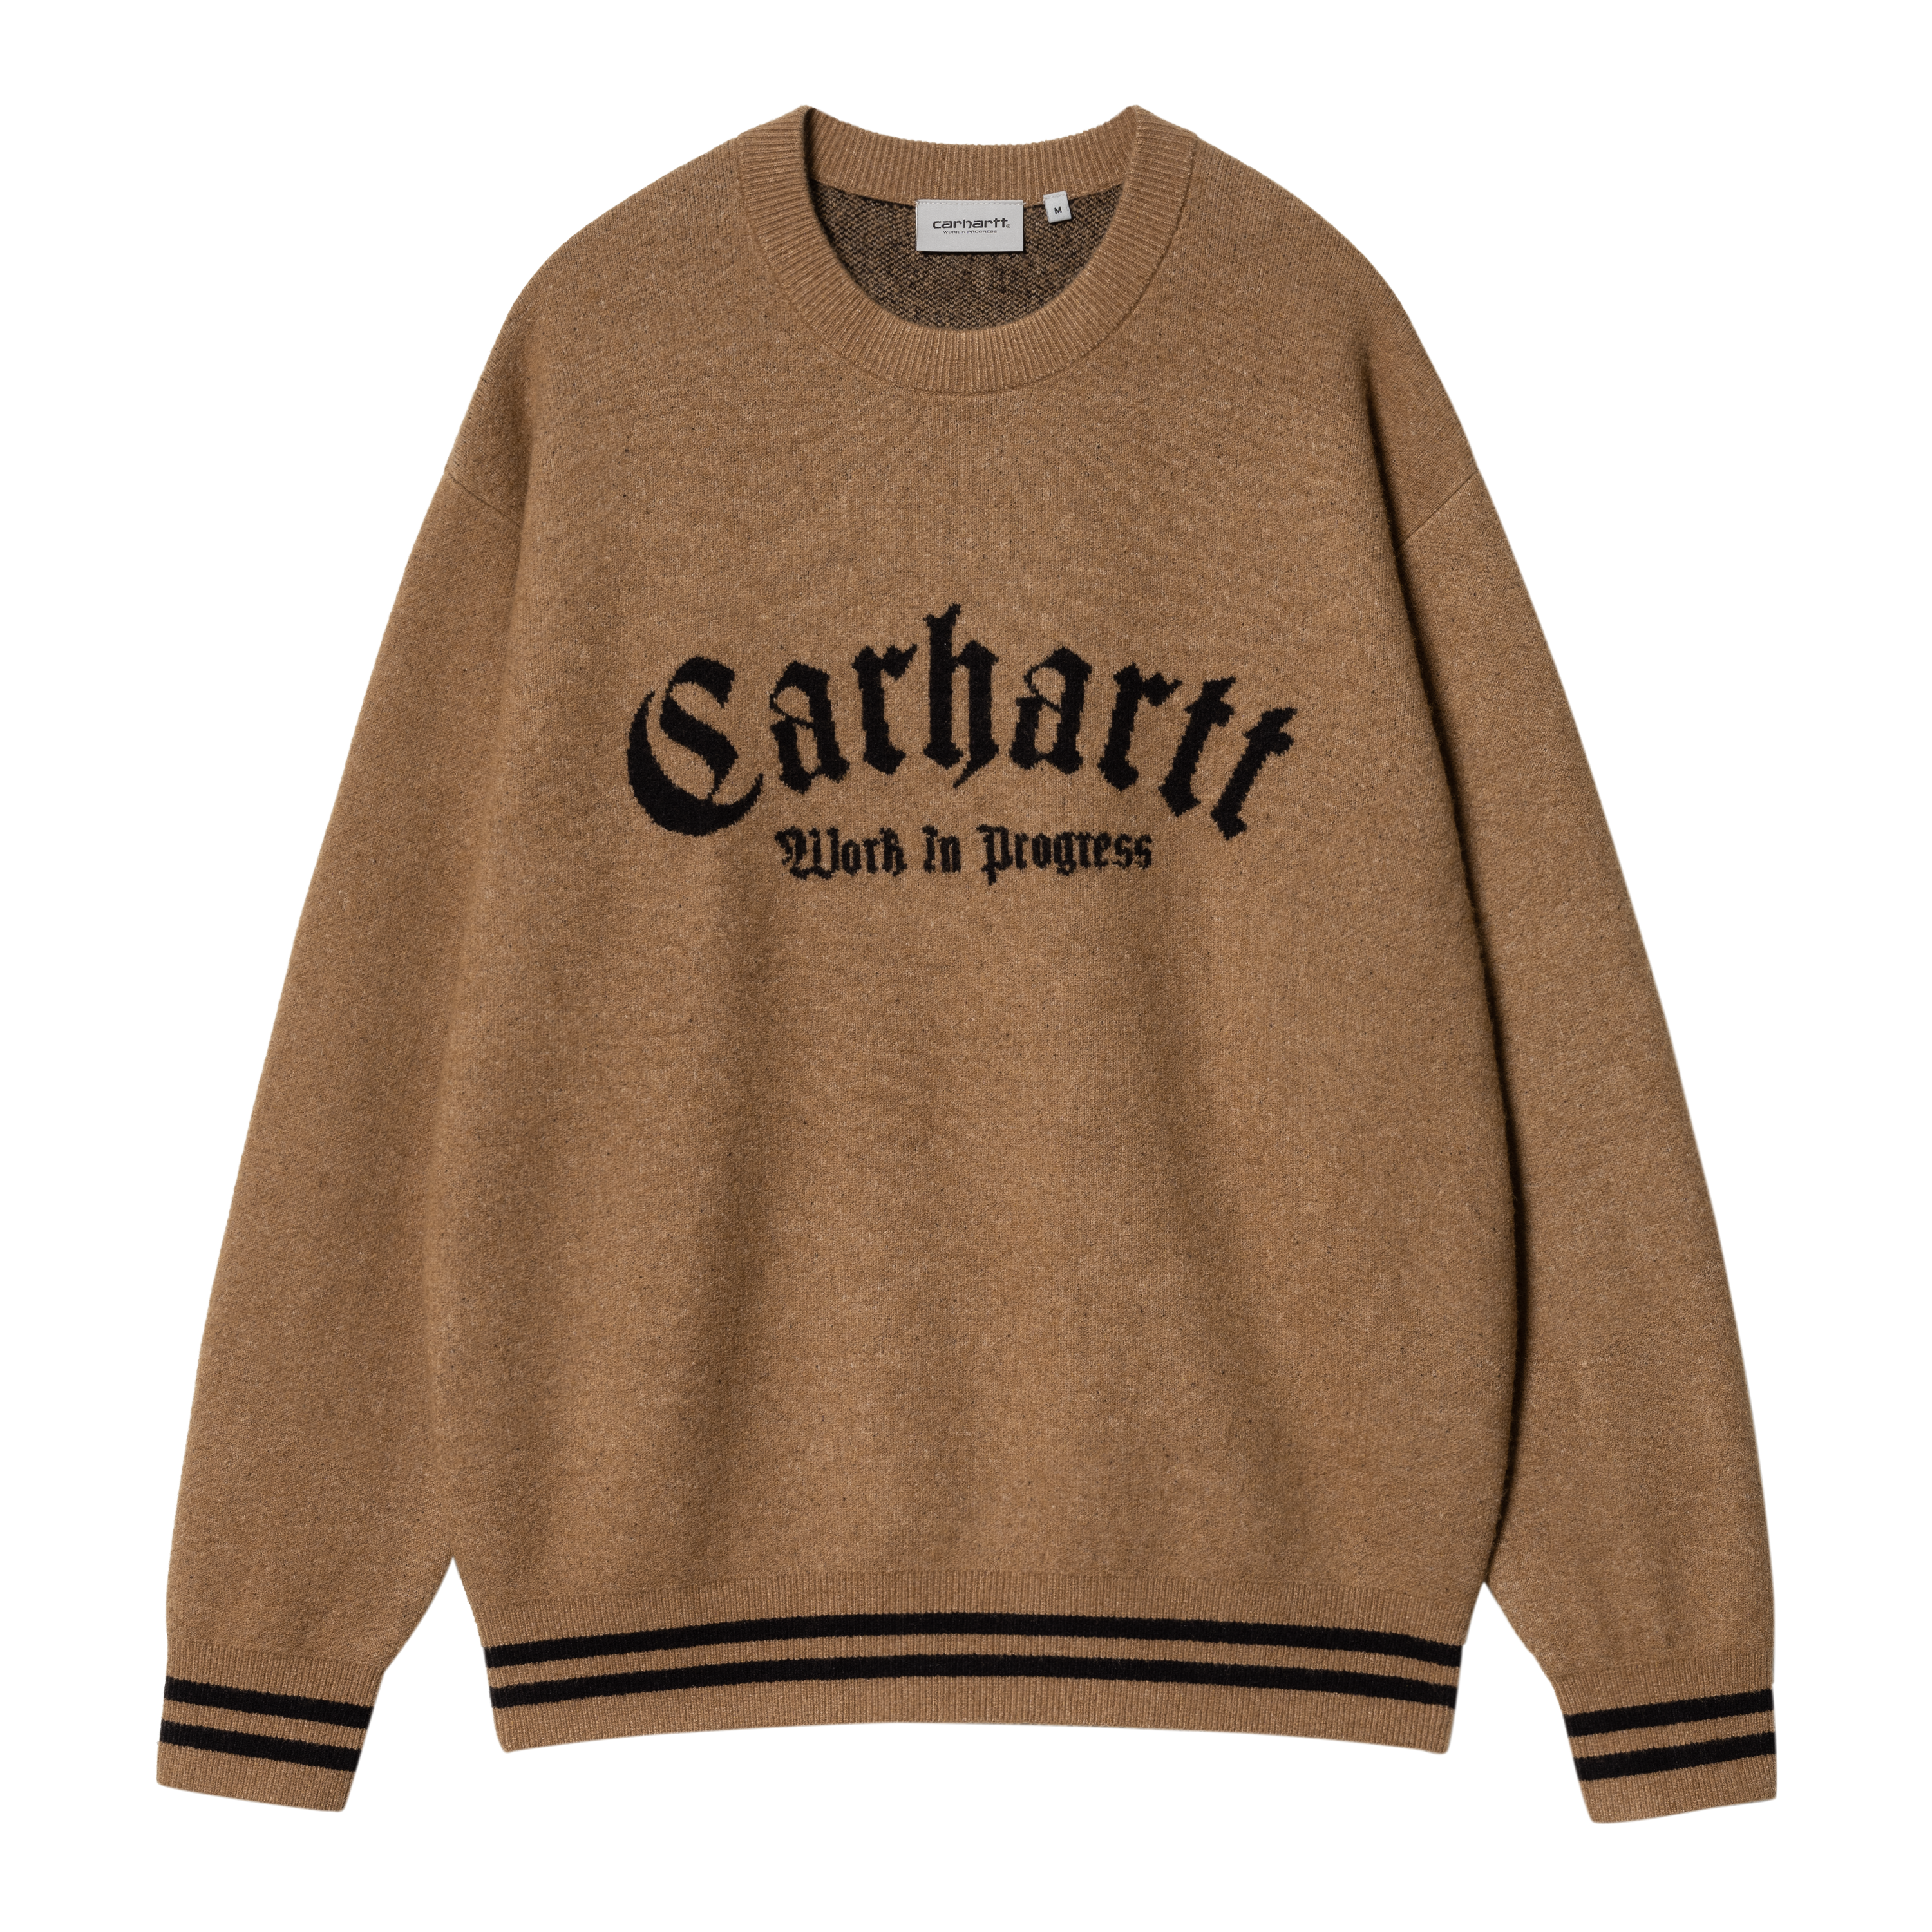 Carhartt WIP Onyx Sweater in Braun